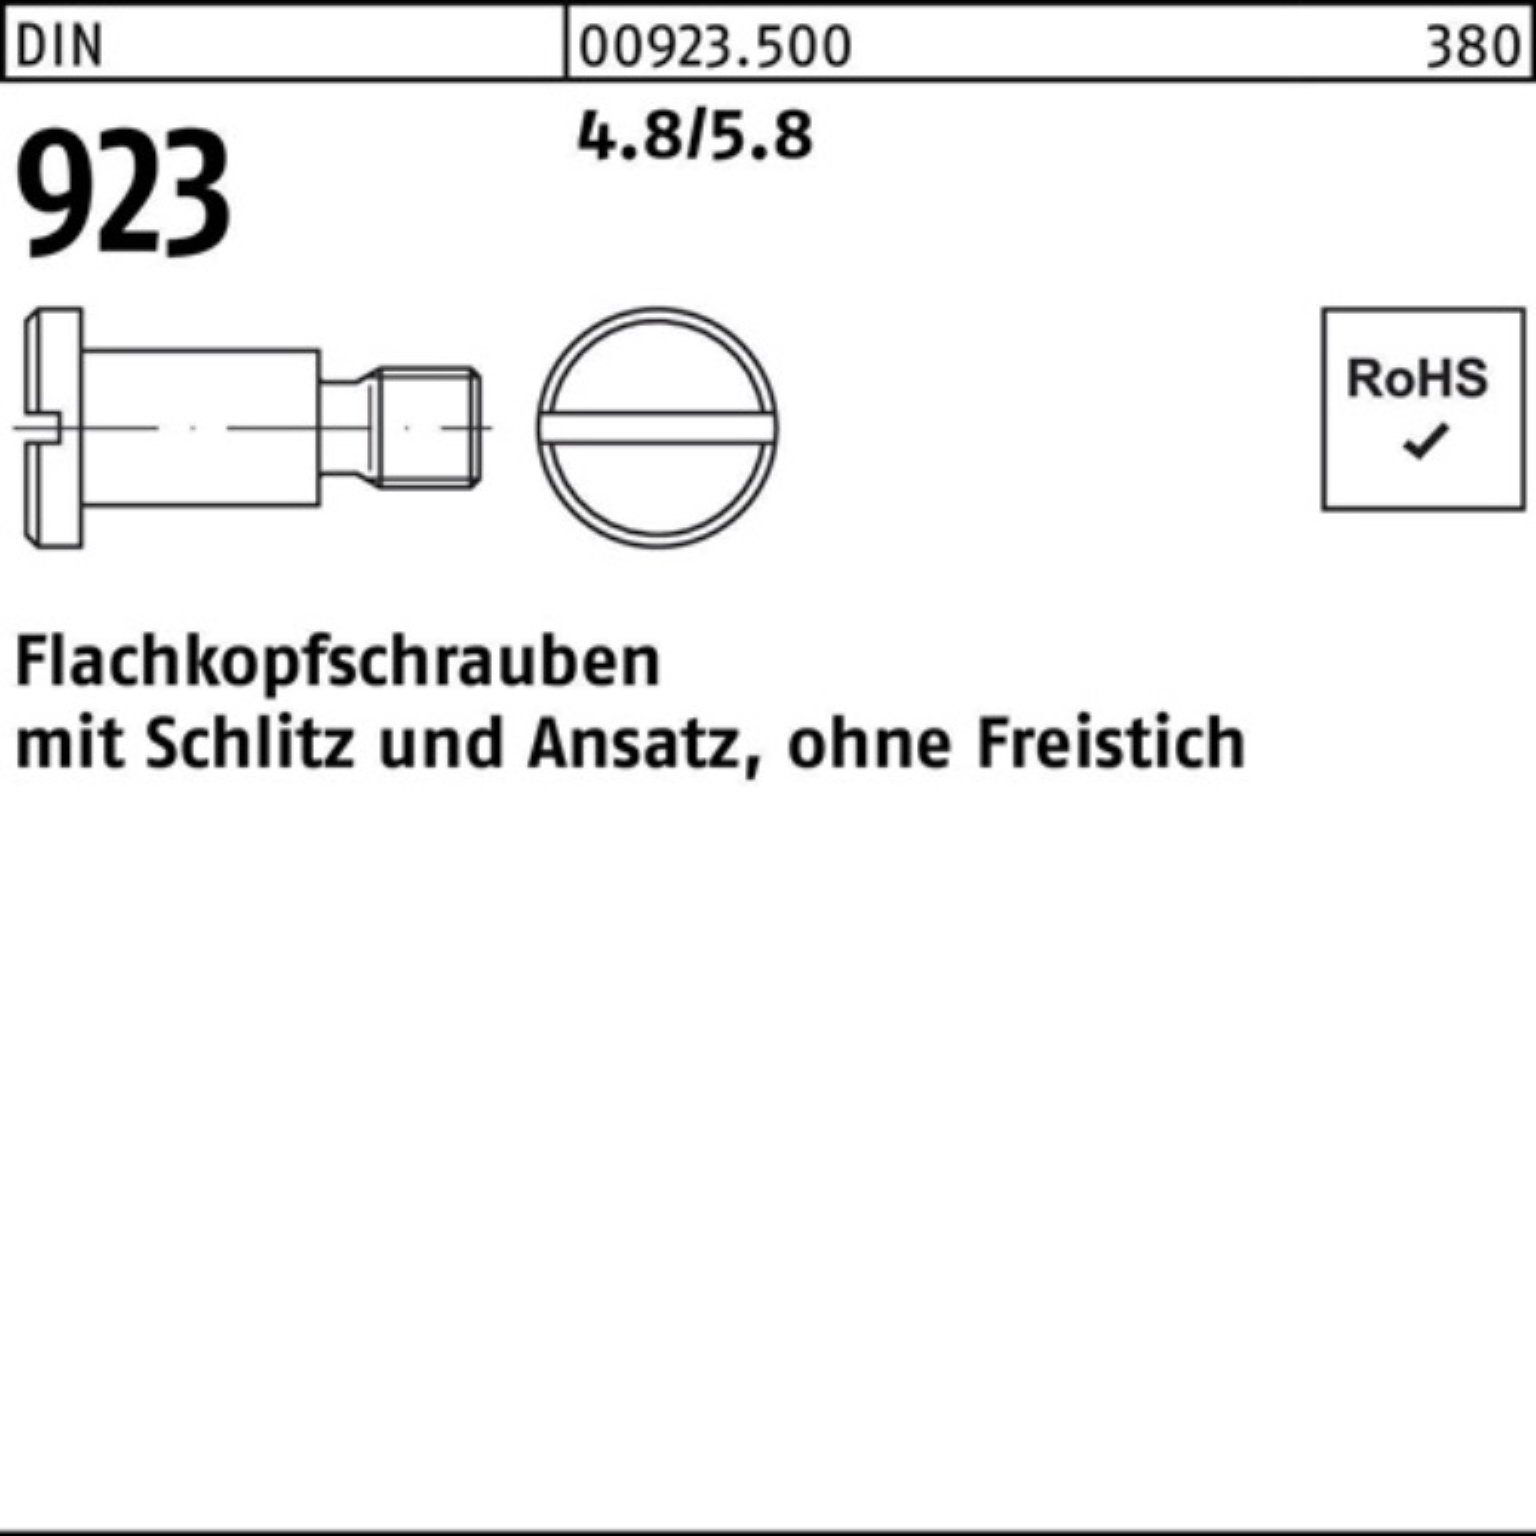 Reyher Schraube 100er Pack Schlitz/Ansatz 923 4.8/5.8 Flachkopfschraube DIN M5x16x 7,0